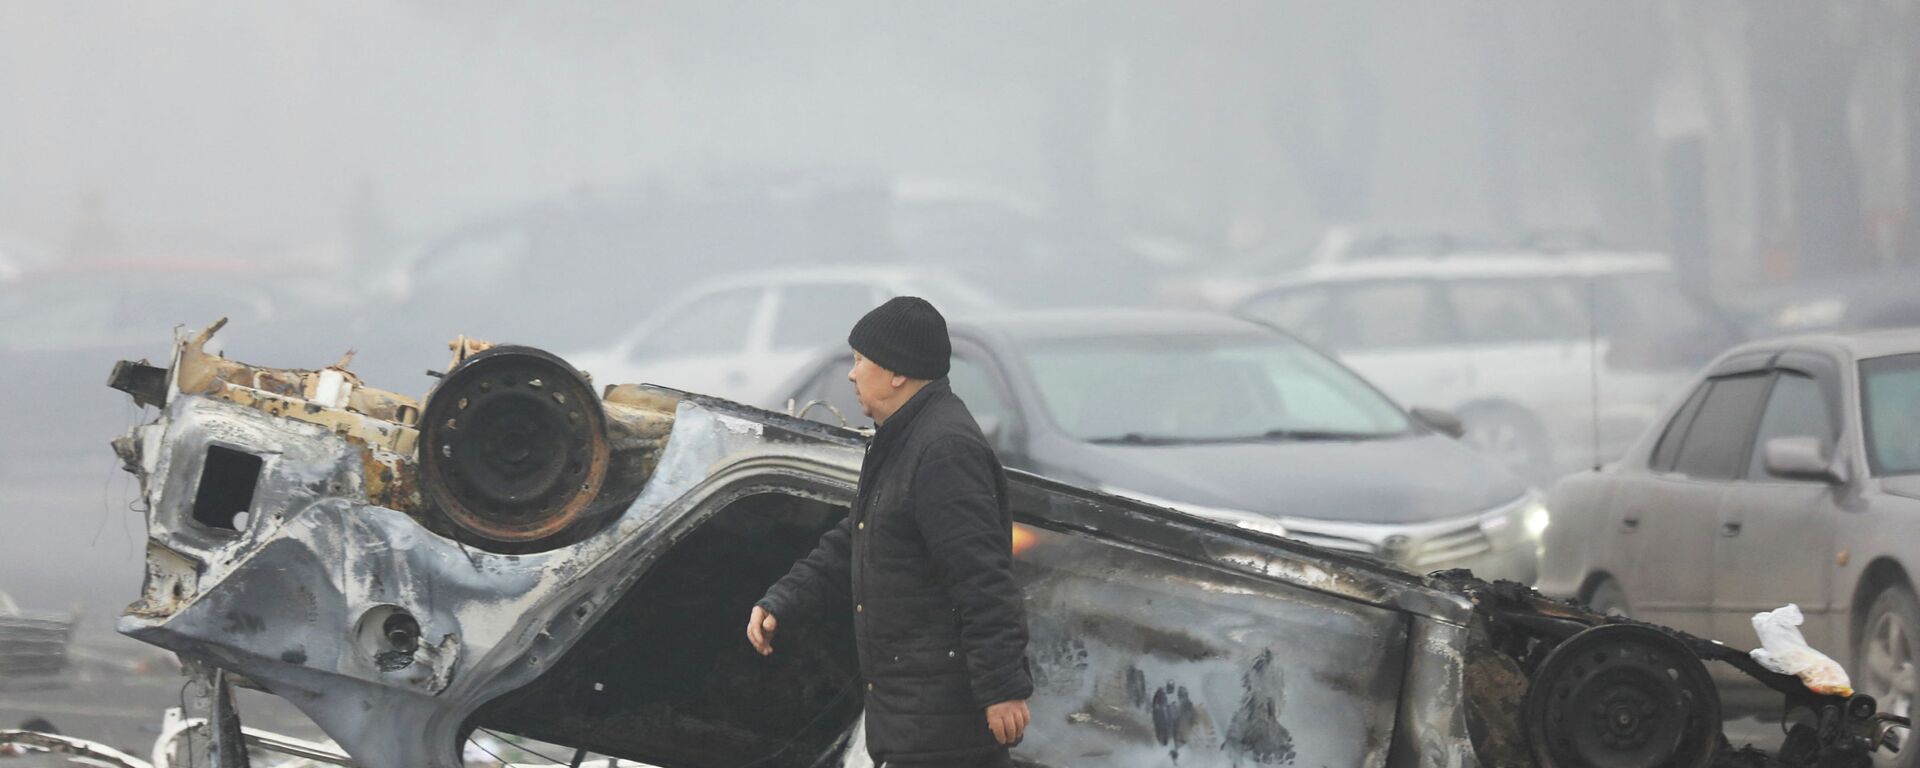 Мужчина проходит мимо машины, сгоревшей во время акций протеста в Алматы. - Sputnik Қазақстан, 1920, 07.01.2022